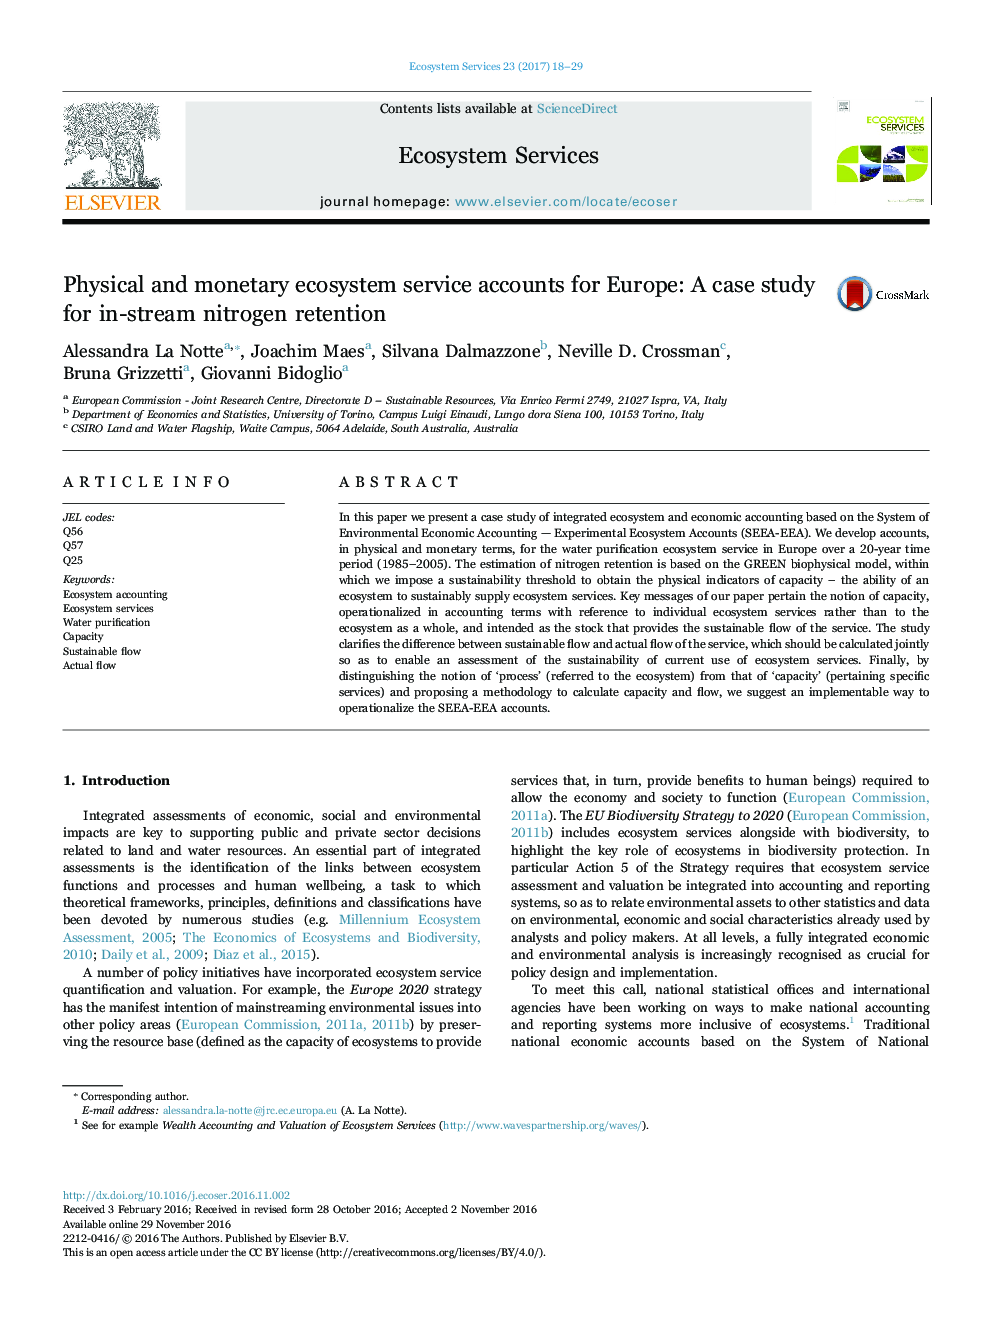 حساب های خدمات اکوسیستم فیزیکی و پولی برای اروپا: مطالعه موردی برای احتباس نیتروژن در جریان